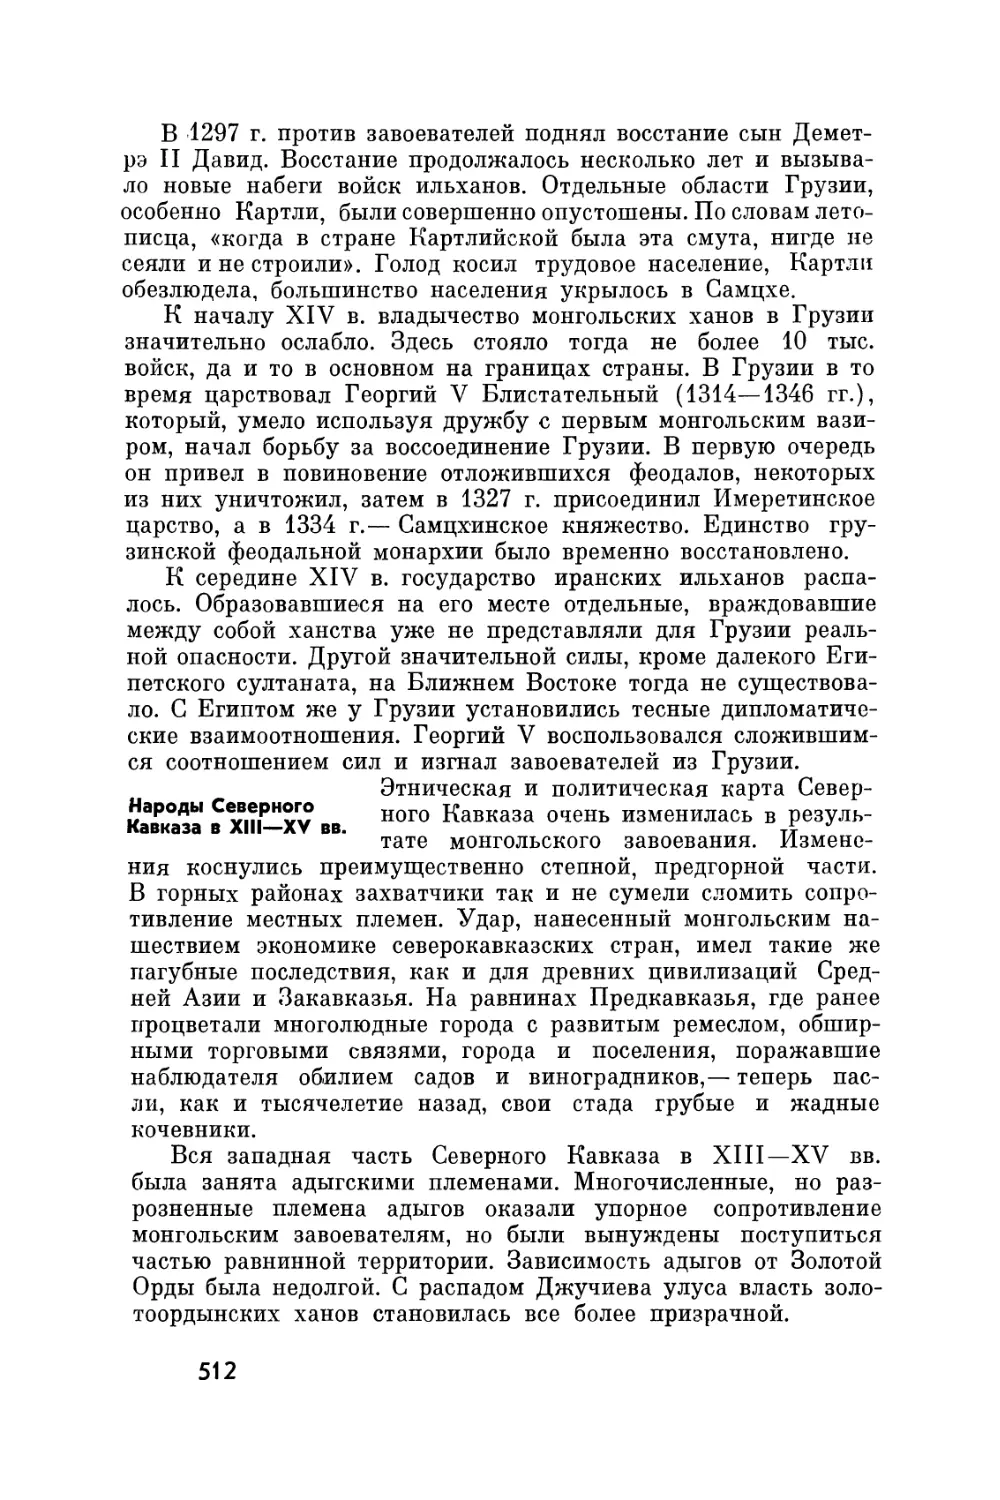 Народы Северного Кавказа в XII—XV вв.